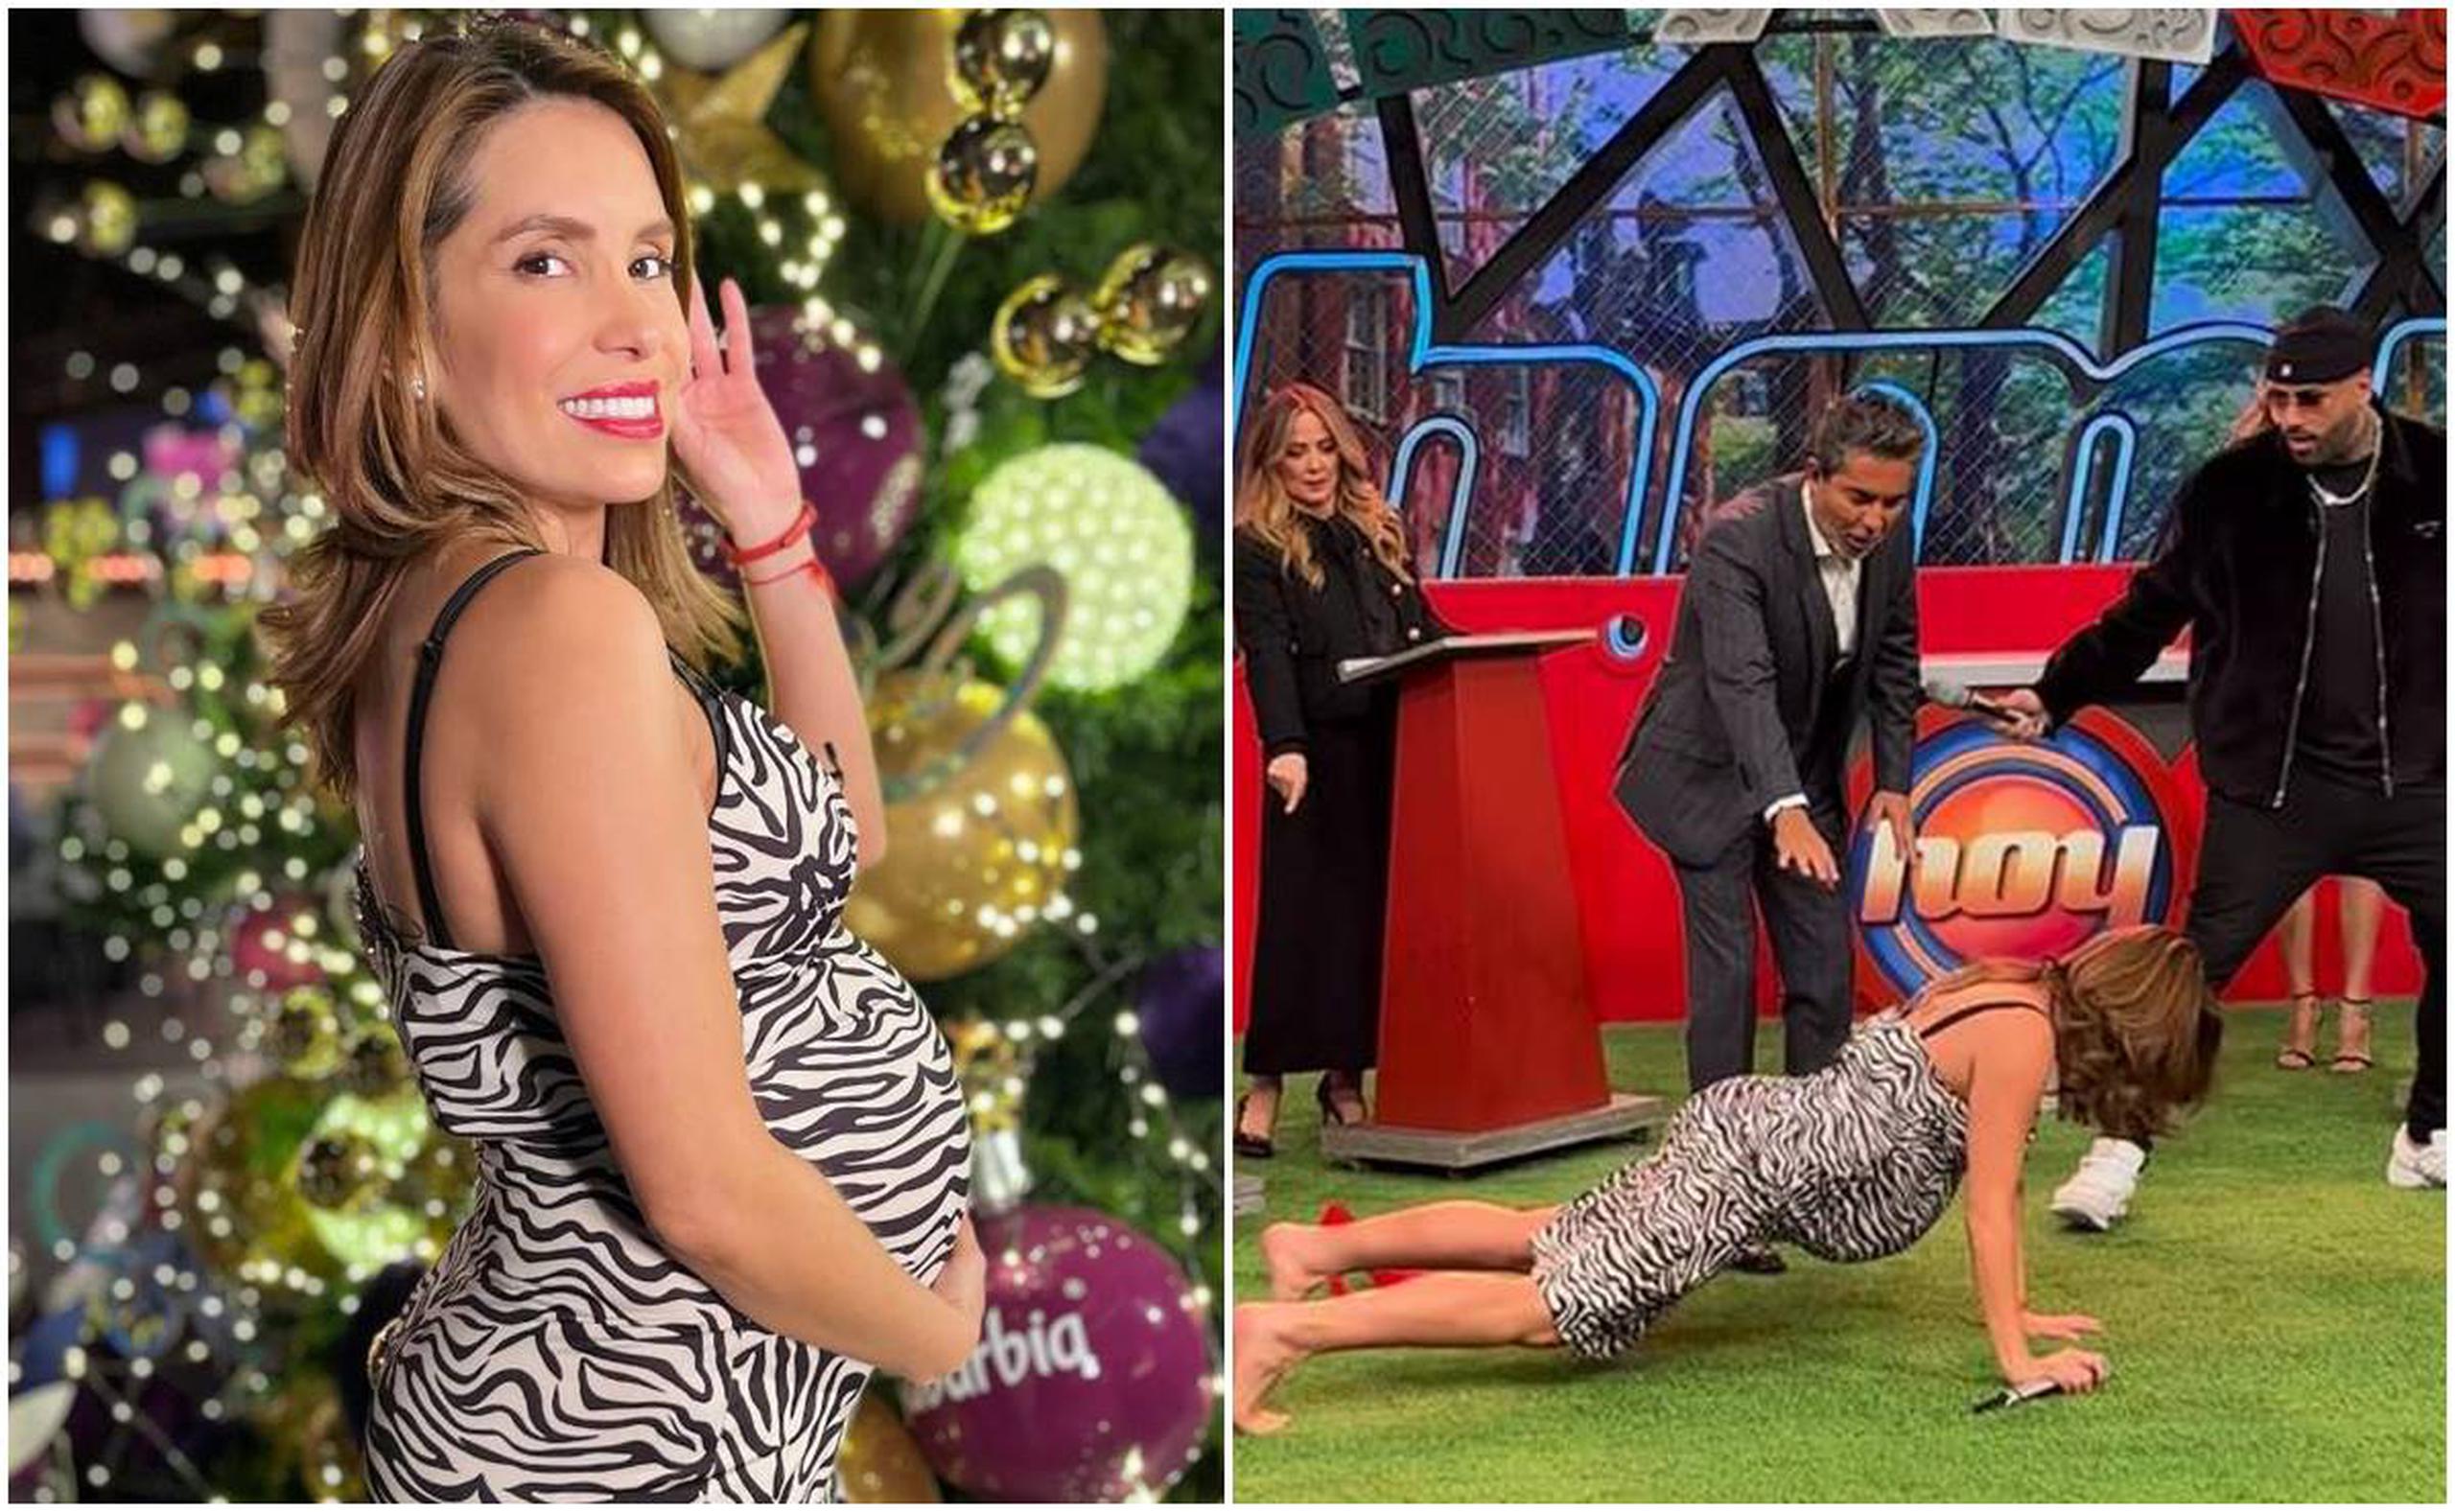 La presentadora Andrea Escalona, quien se encuentra en sus últimas semanas de embarazo, deja perplejo al reguetonero boricua Nicky Jam con su "perreo".